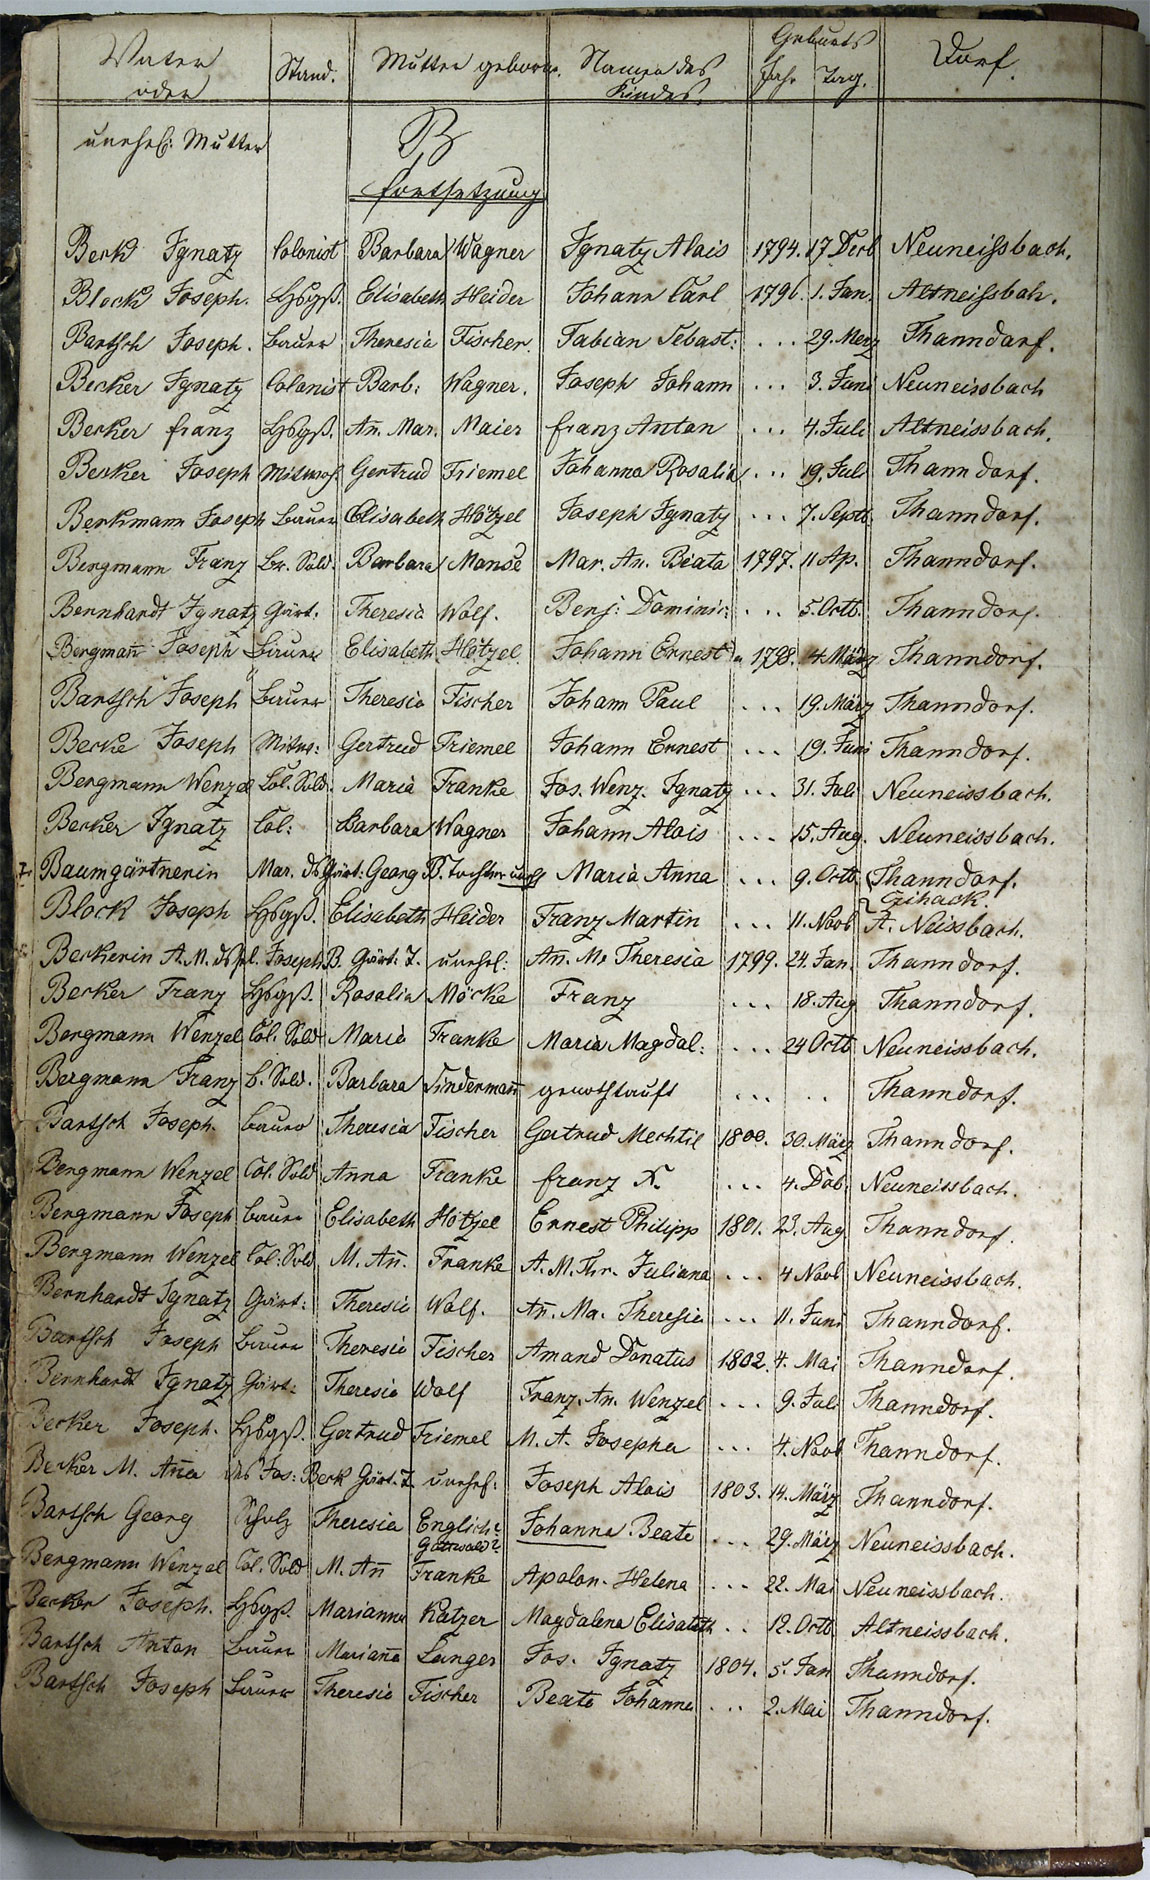 Taufregister 1770 - 1889 Seite 4